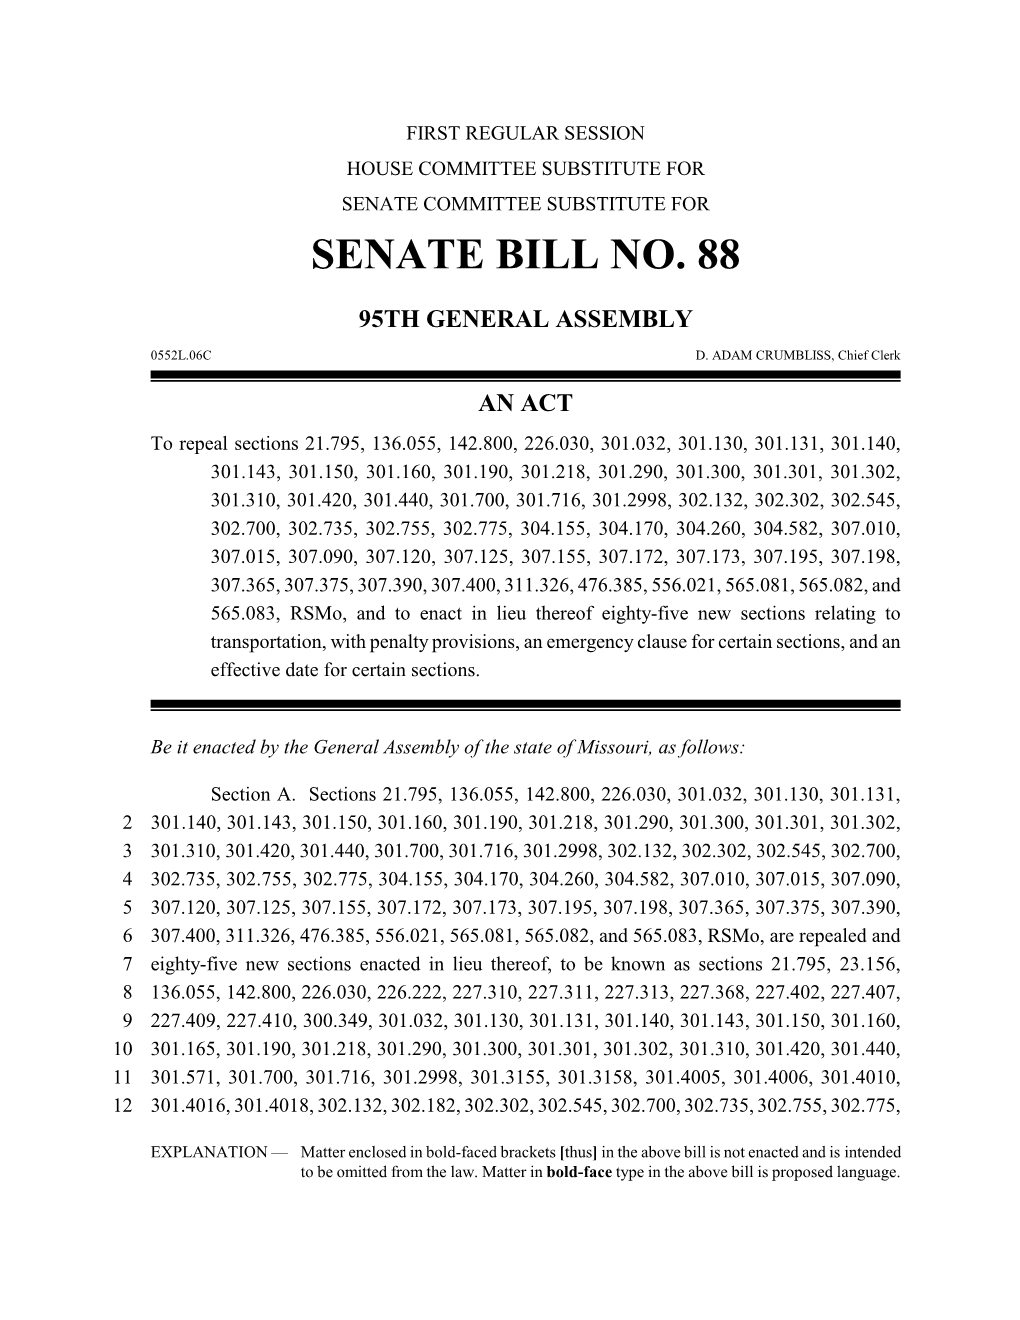 Senate Bill No. 88